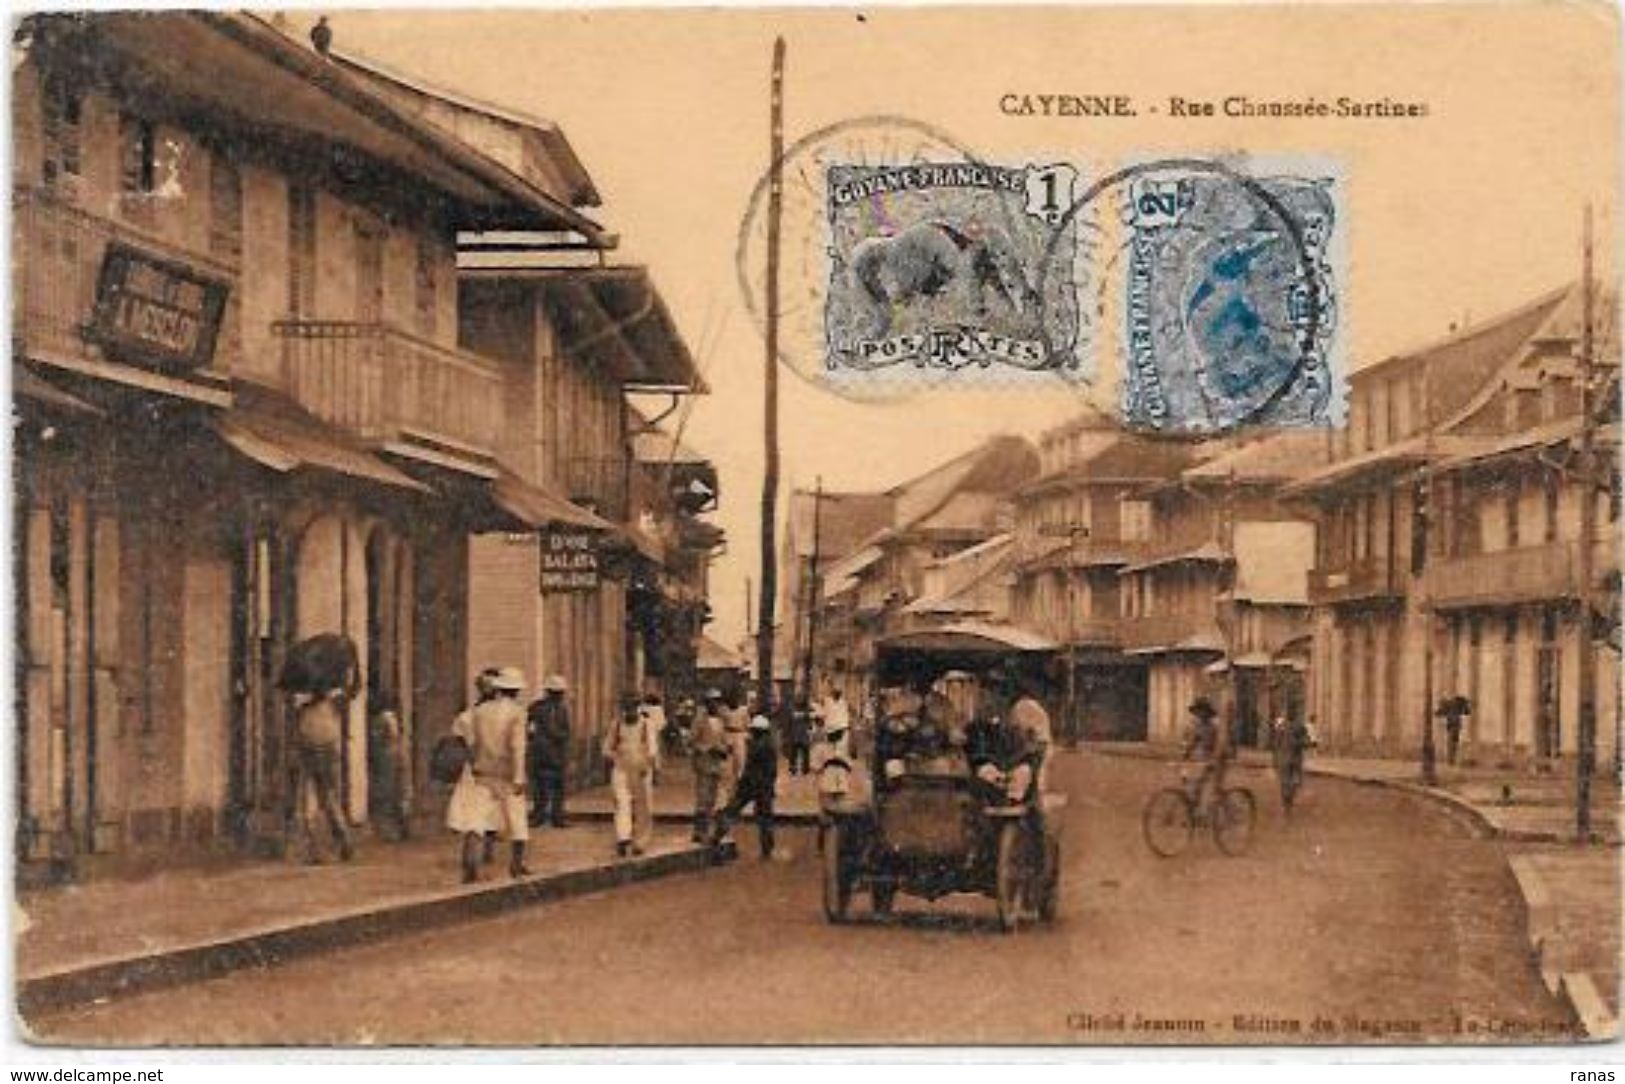 CPA Guyane Guyana Cayenne Timbrée - Cayenne